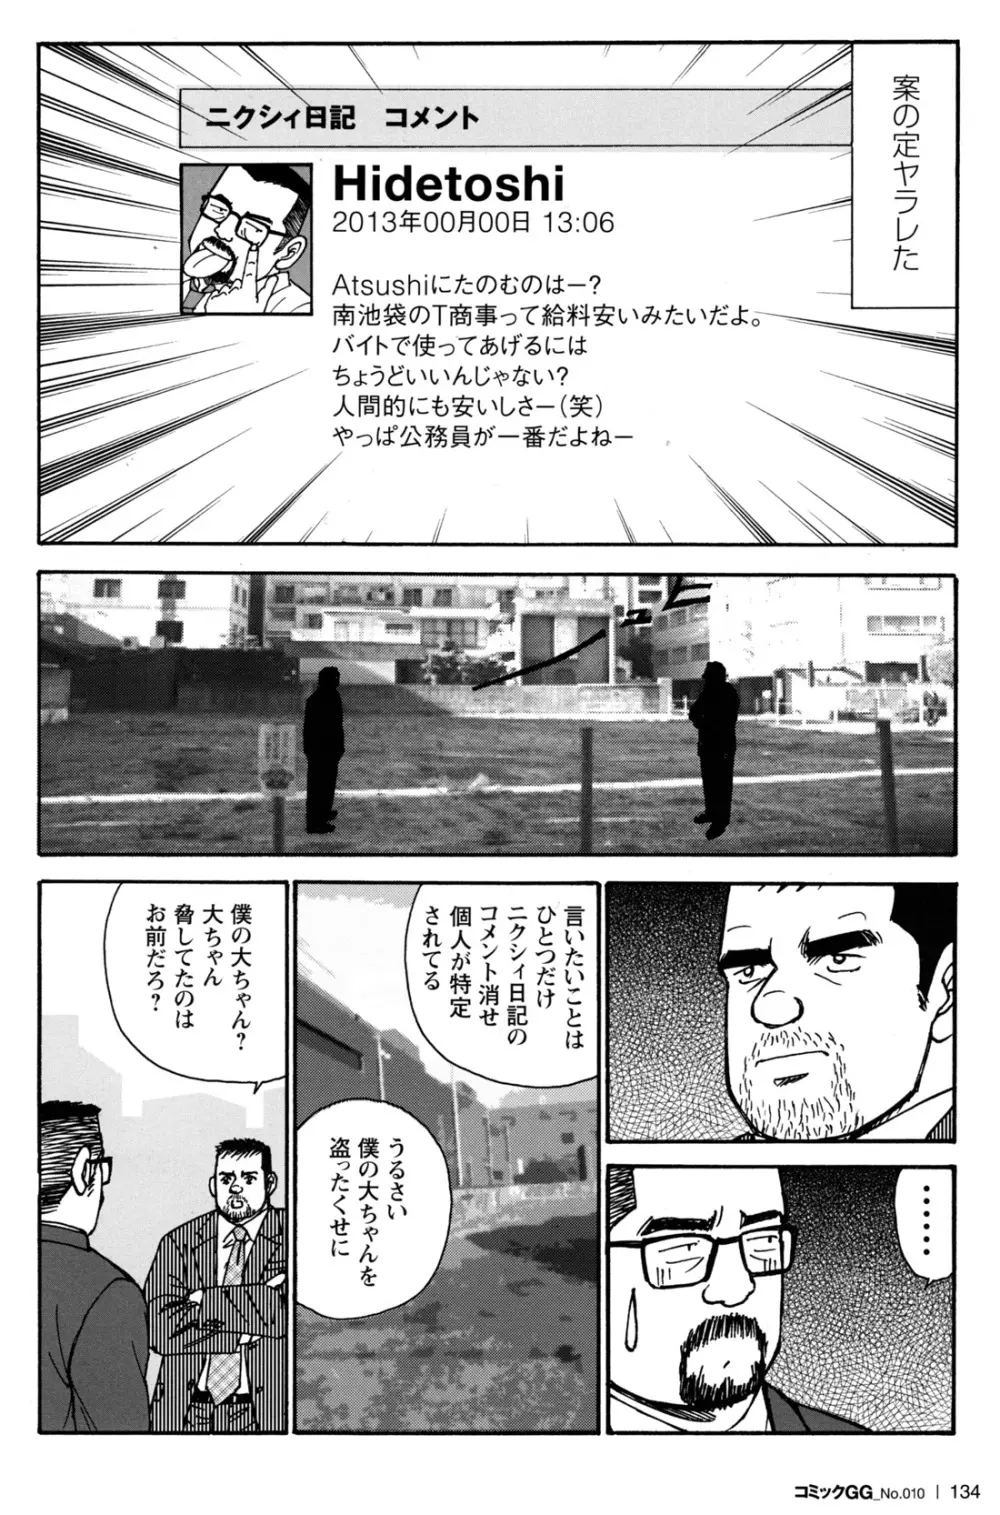 コミックG.G. No.10 のぞき・レイプ・痴漢 128ページ